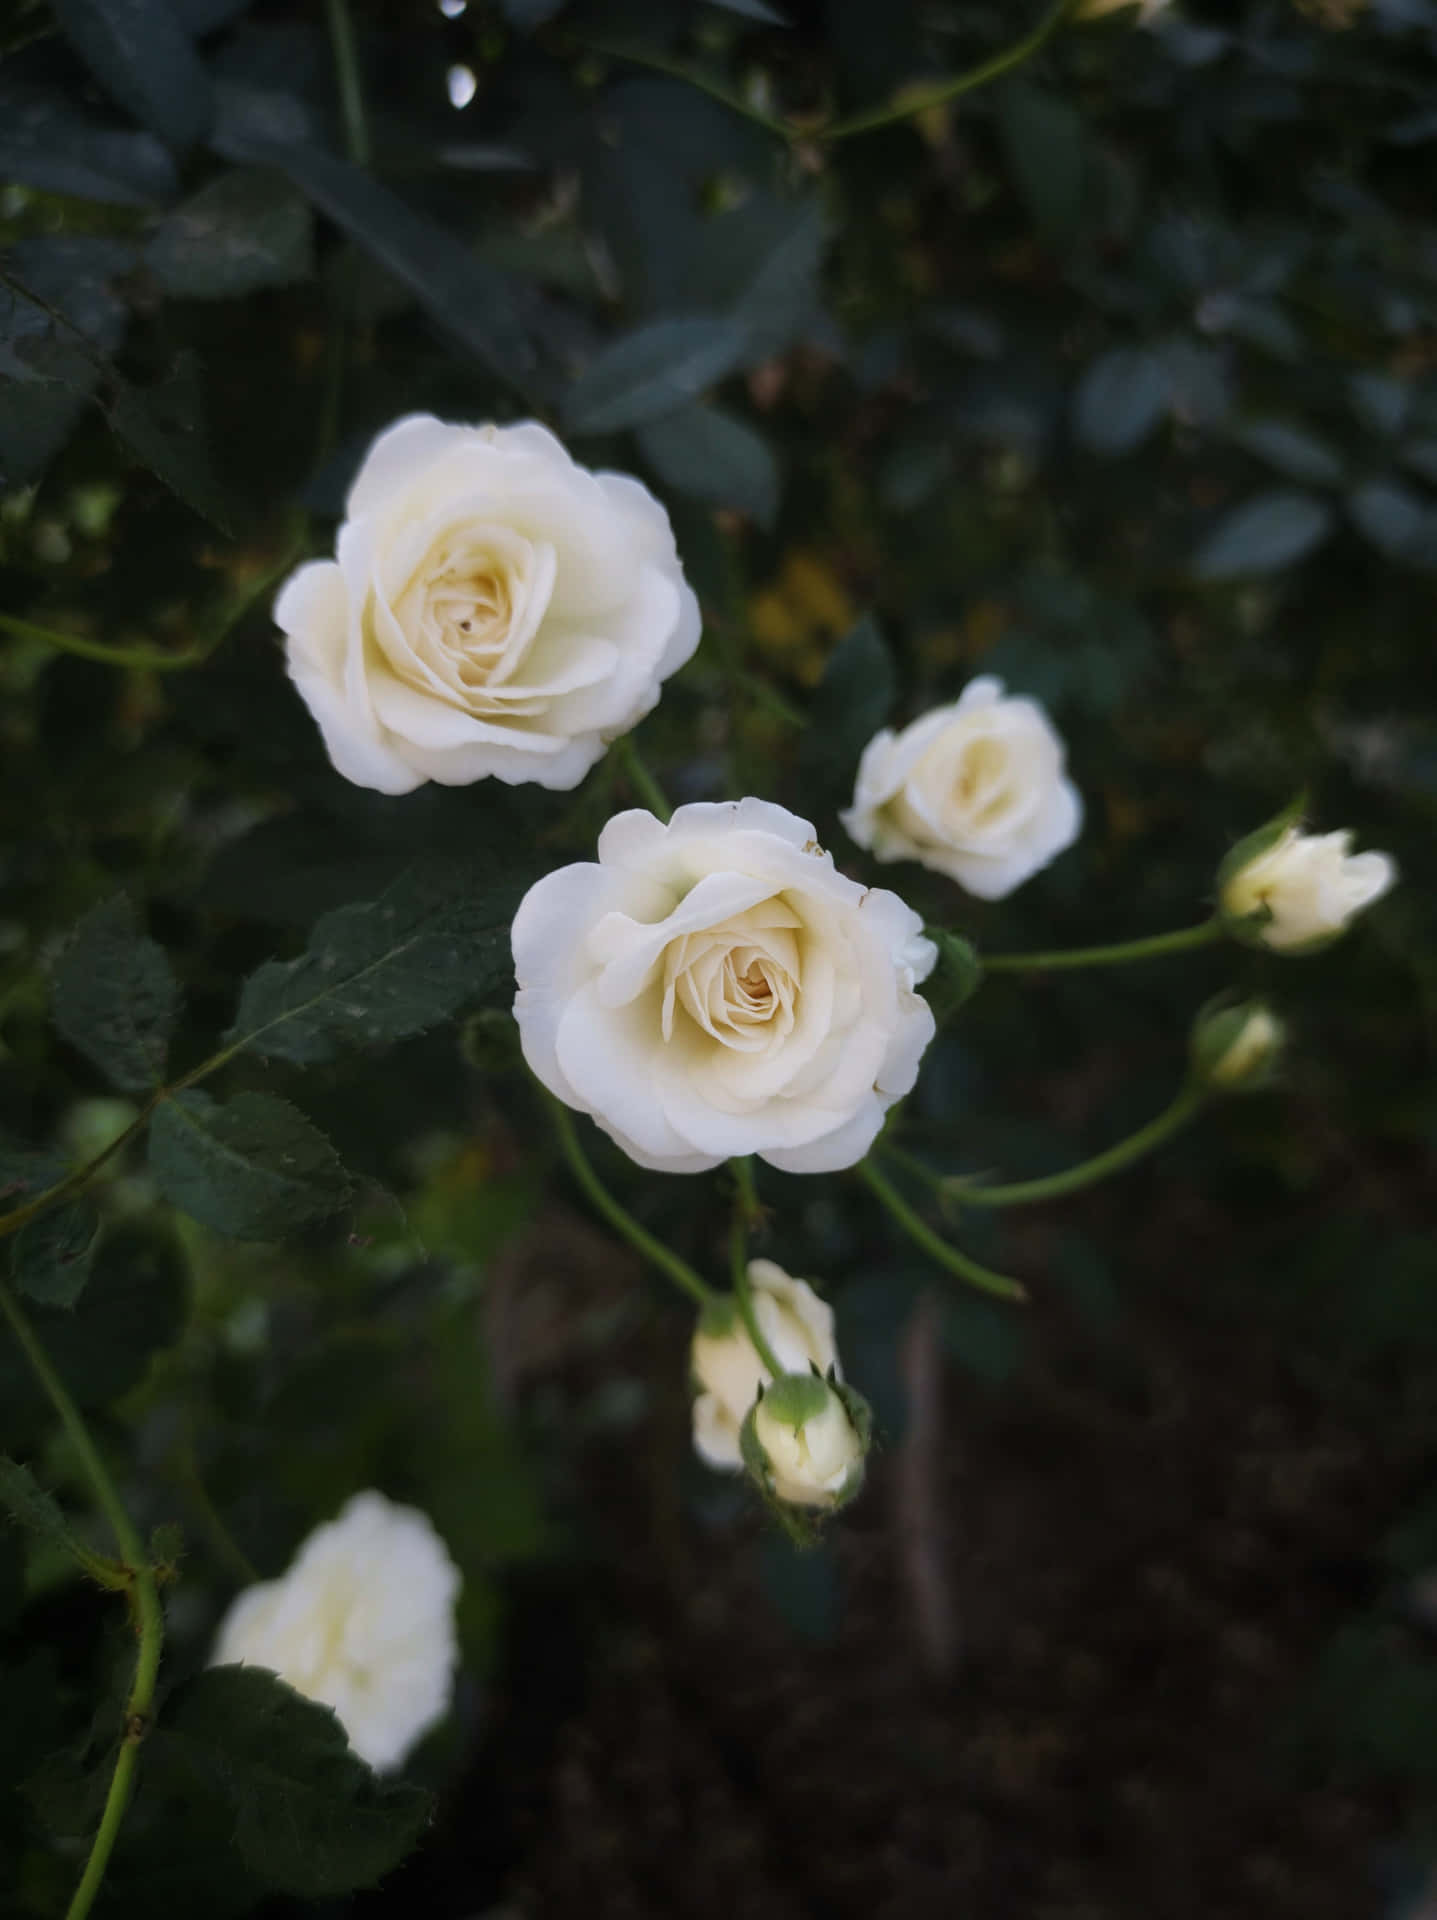 Papelde Parede De Rosas Brancas Florescendo Em Retrato.